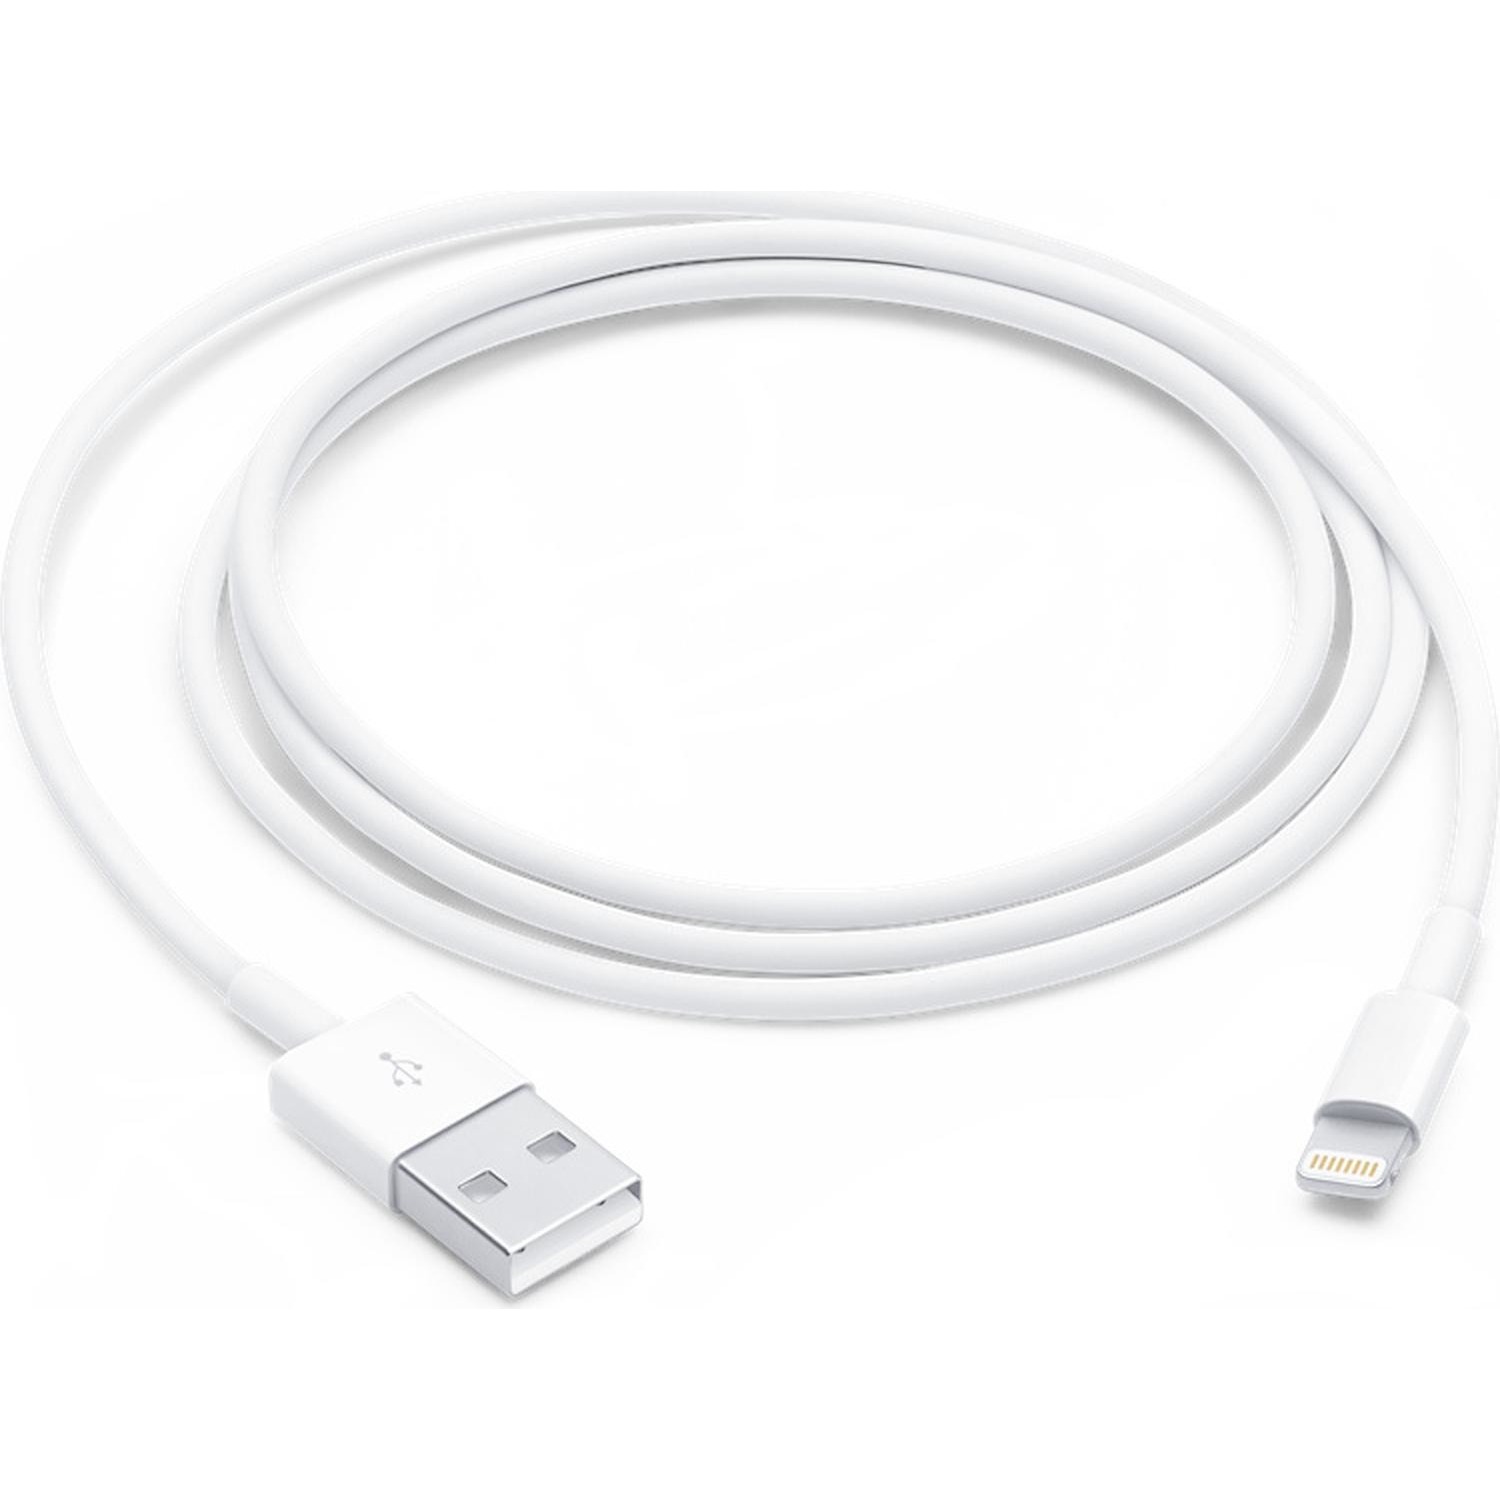 Immagine per Cavo lighting Apple USB 1 metro da DIMOStore